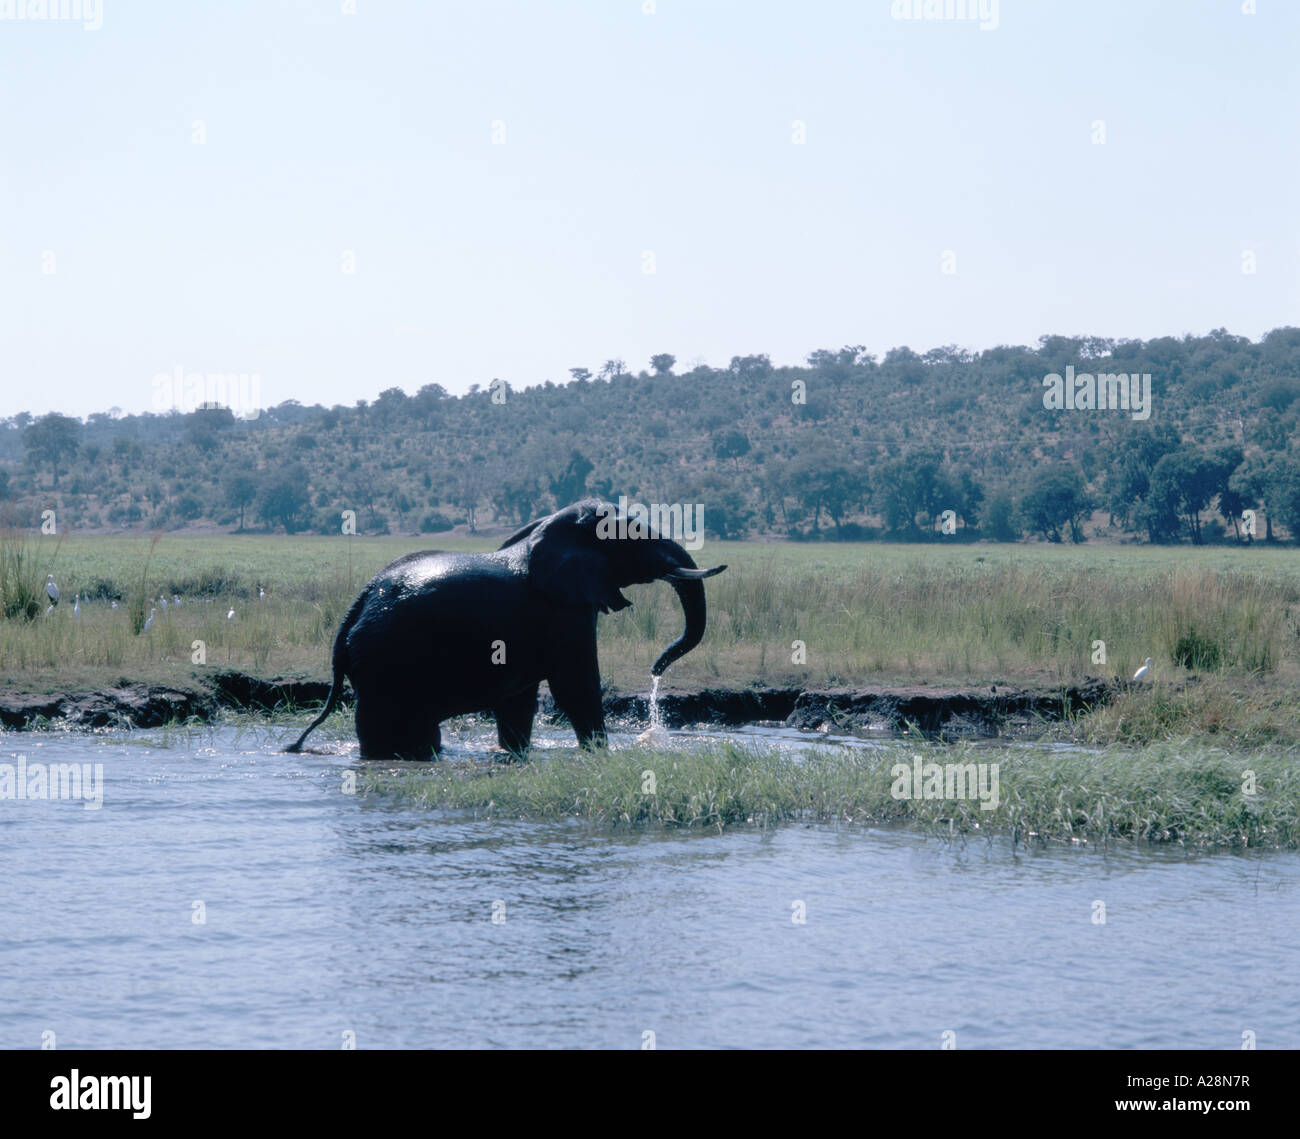 Jeu de l'éléphant dans la région de River, le Parc National de Chobe, Chobe, République du Botswana Banque D'Images